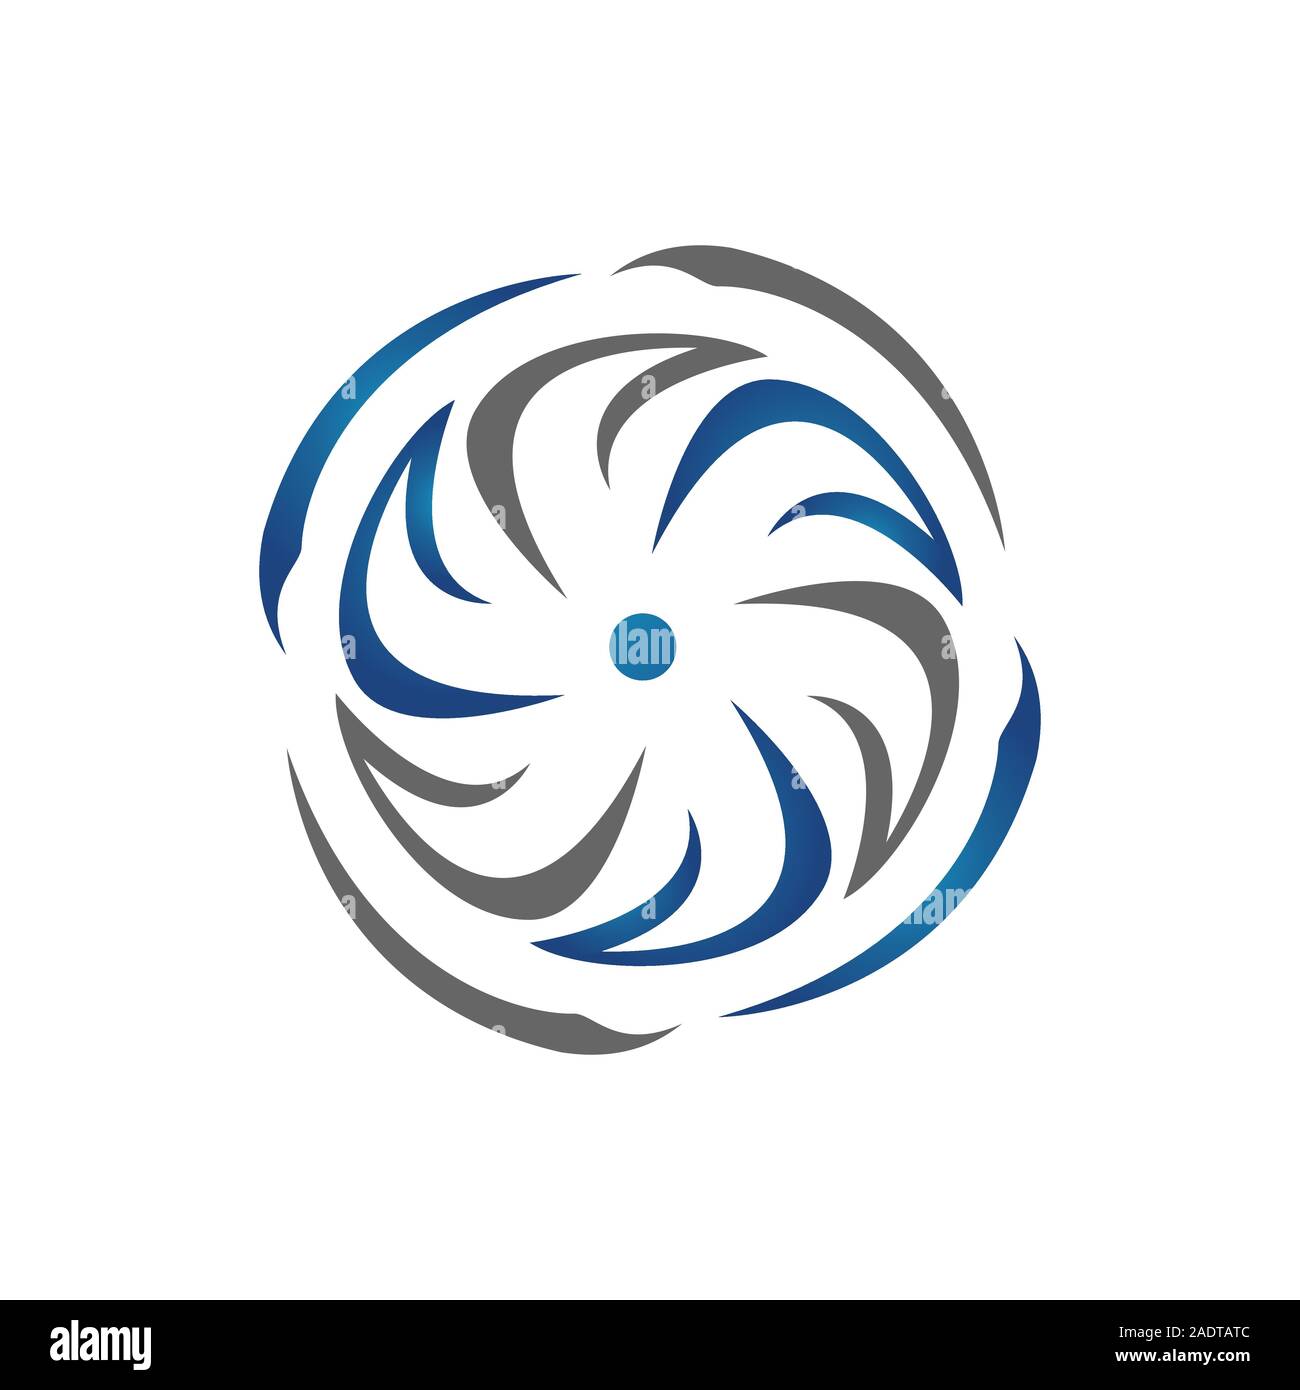 La rotation de l'éolienne de l'eau logo design illustrations vectorielles. circle spinning turbine turbulence symbole. Illustration de Vecteur